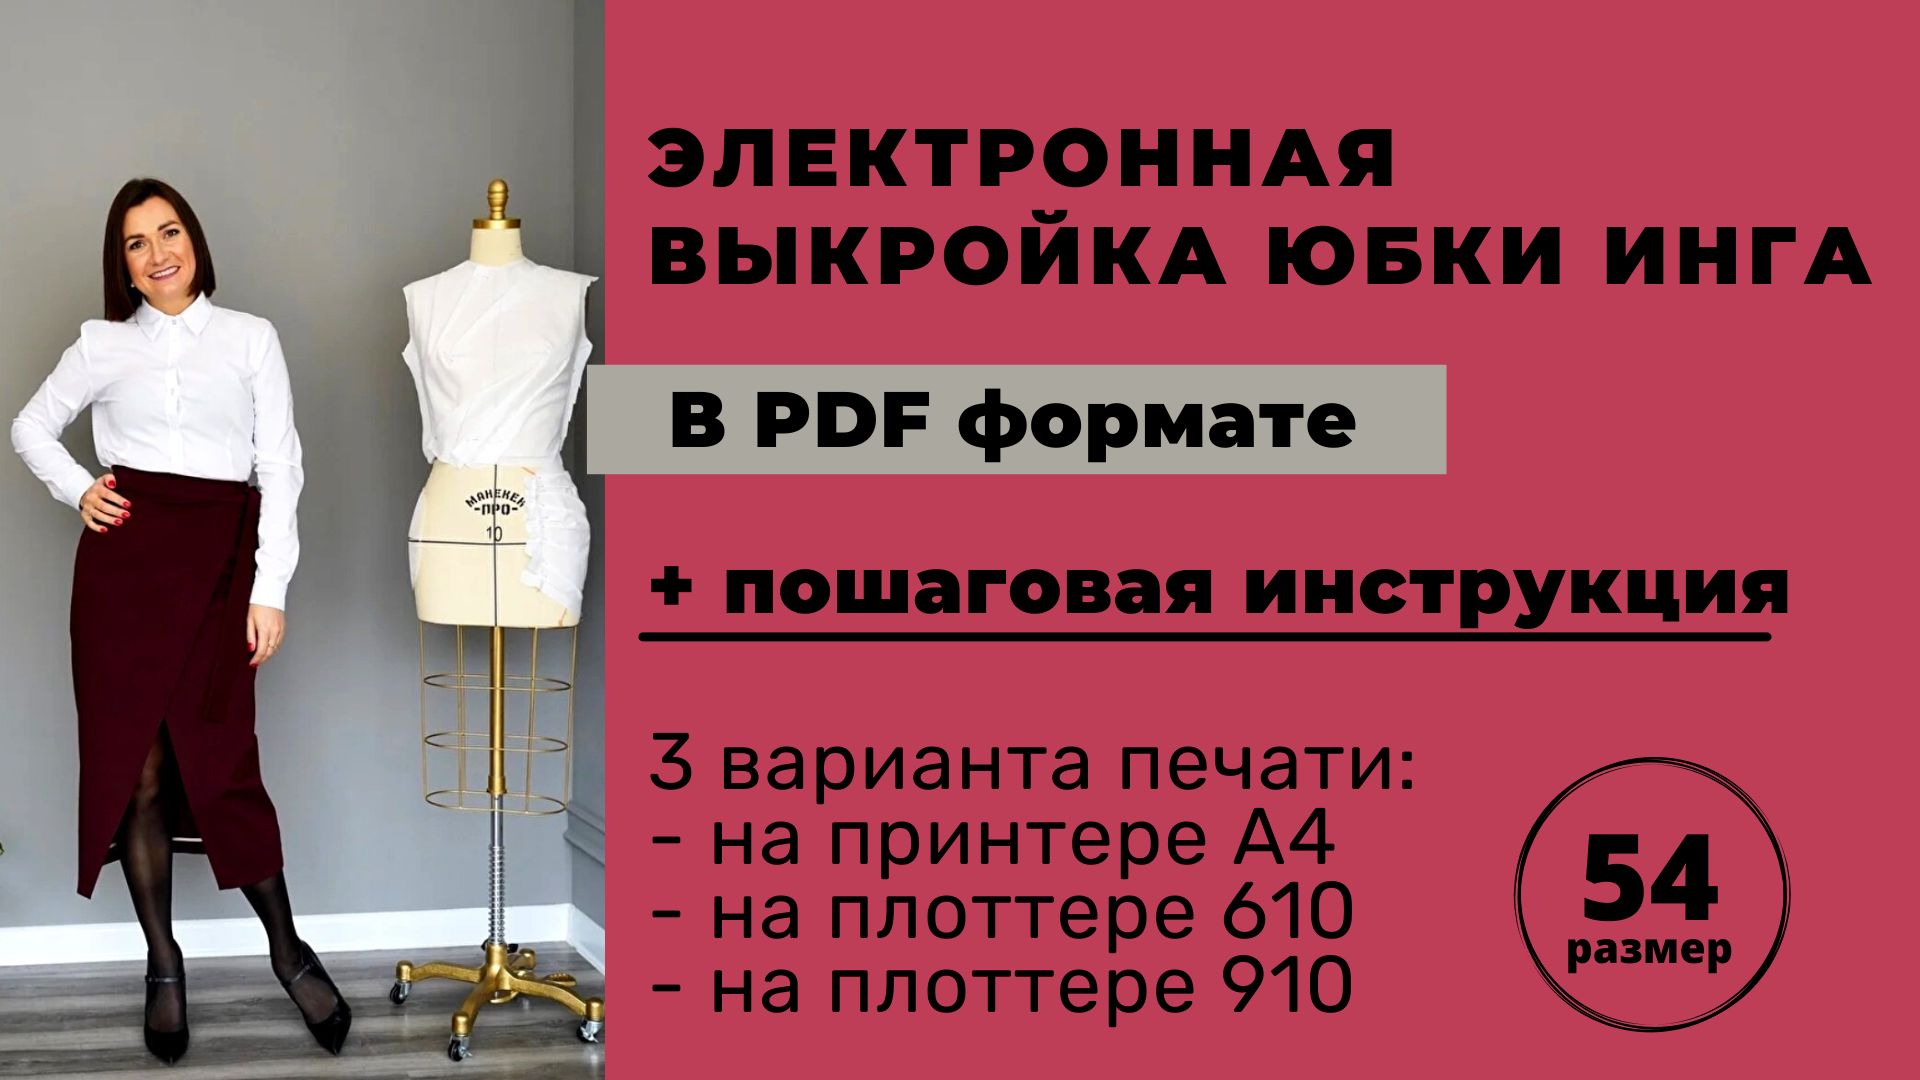 Электронная выкройка юбки Инга размер 54 в формате pdf для печати А4 / плоттер 610 / плоттер 910